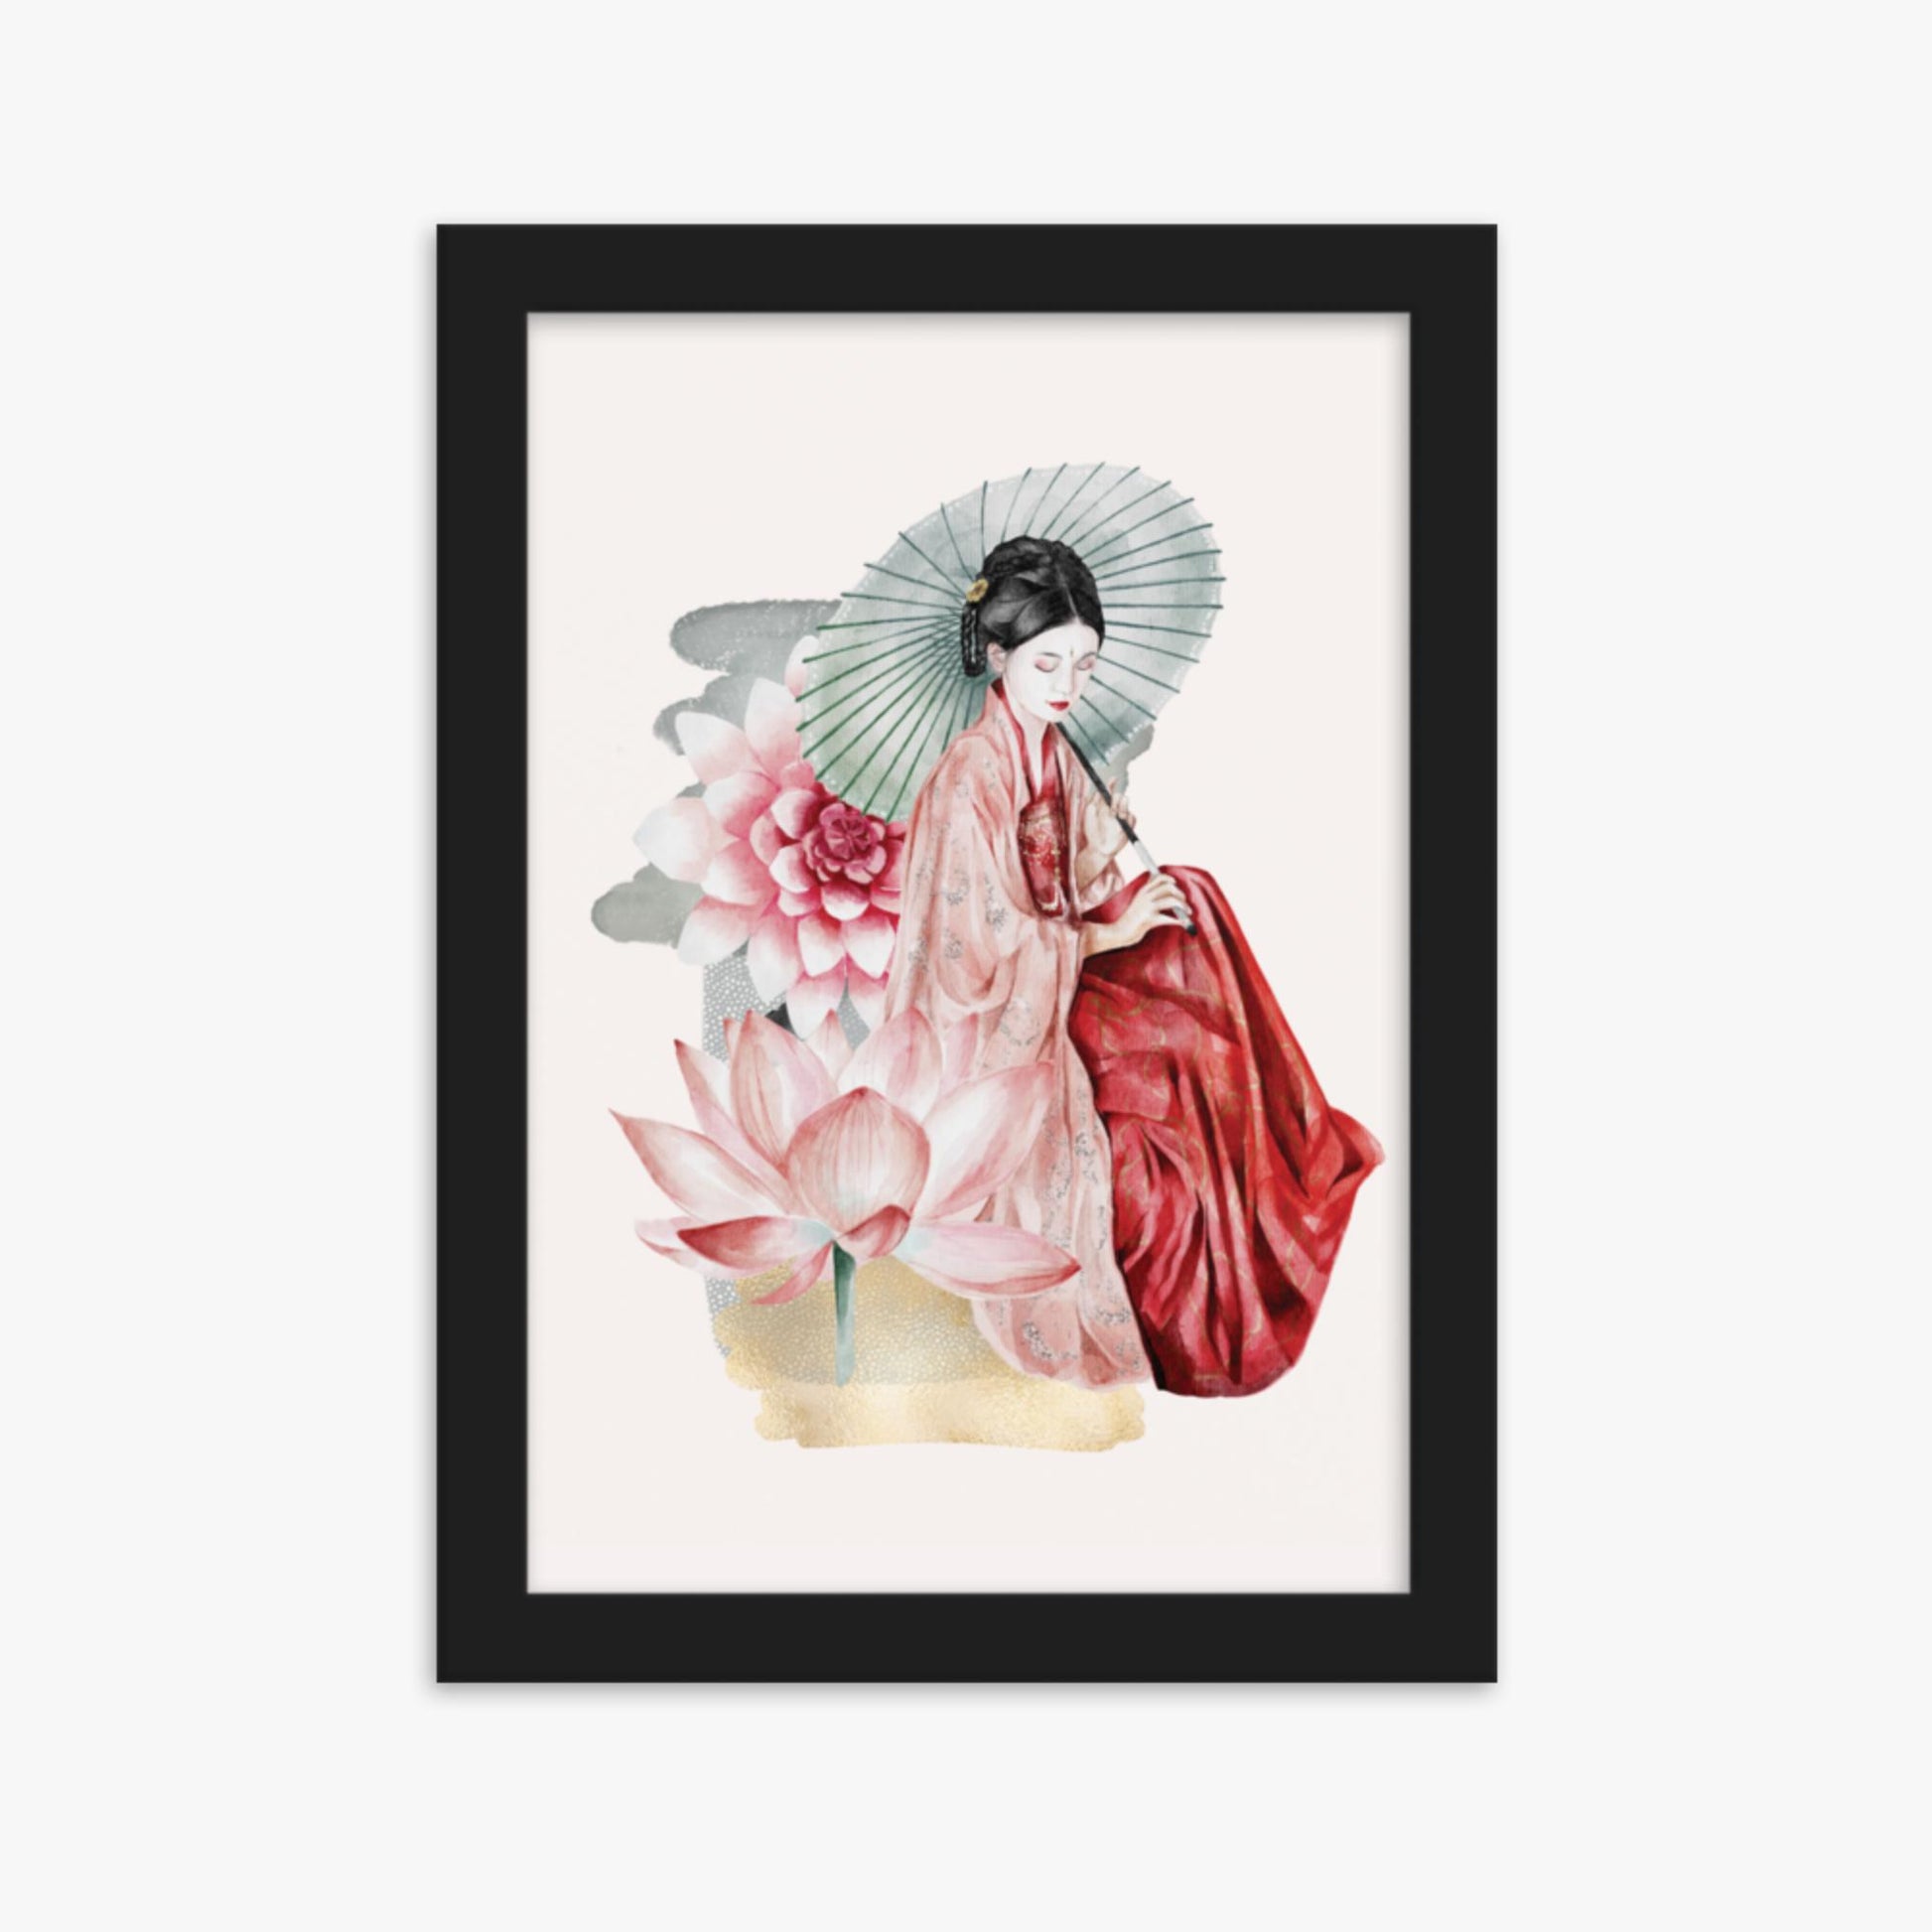 Modern illustration: Serenity 21x30 cm Poster With Black Frame Frame